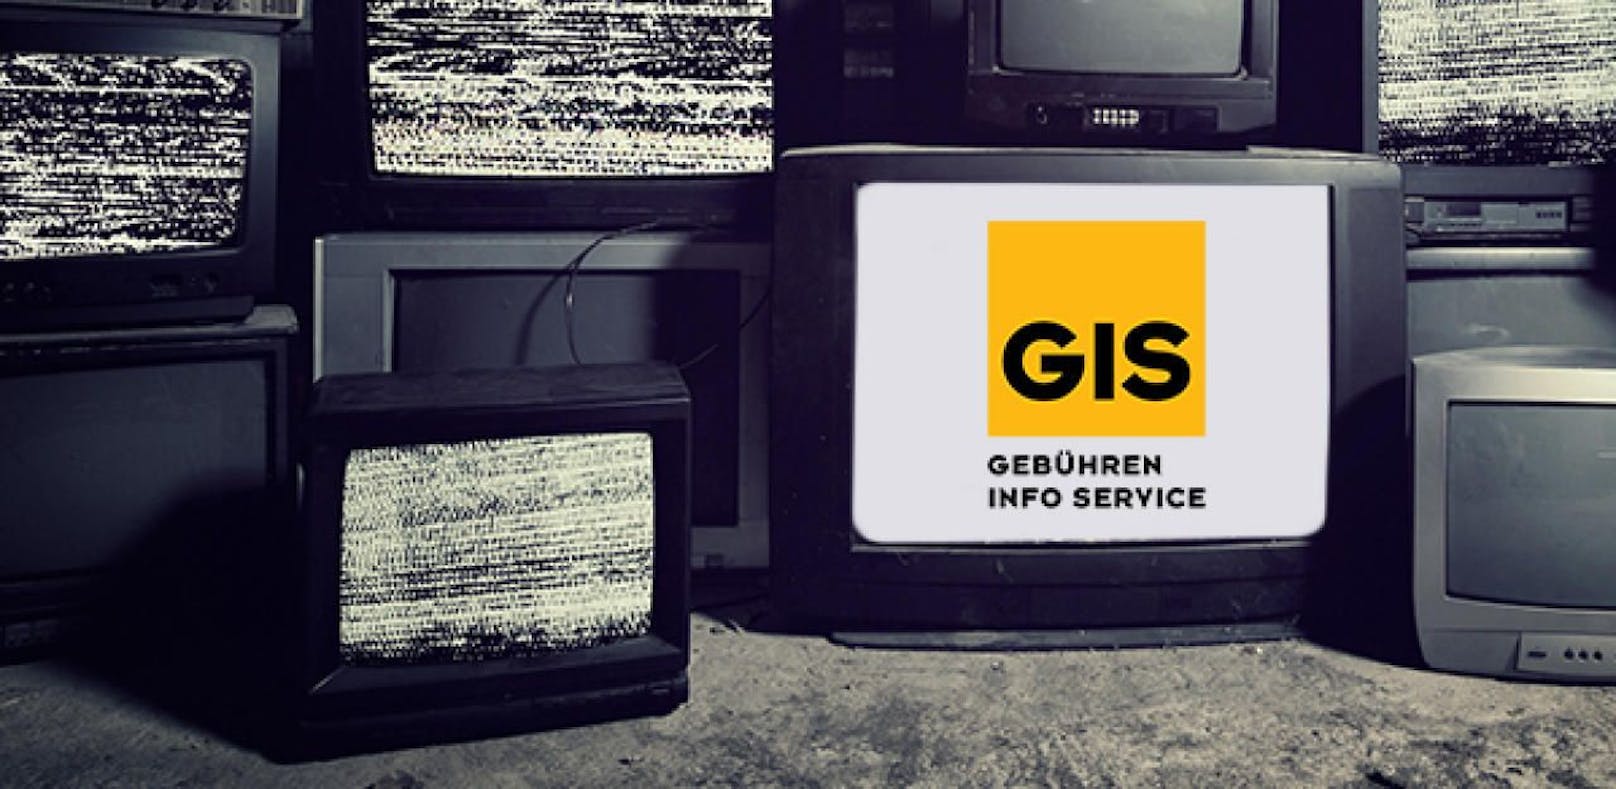 Käufer von GIS-freien Fernsehern werden sich ärgern: Auch sie müssen die neue ORF-Gebühr abdrücken.